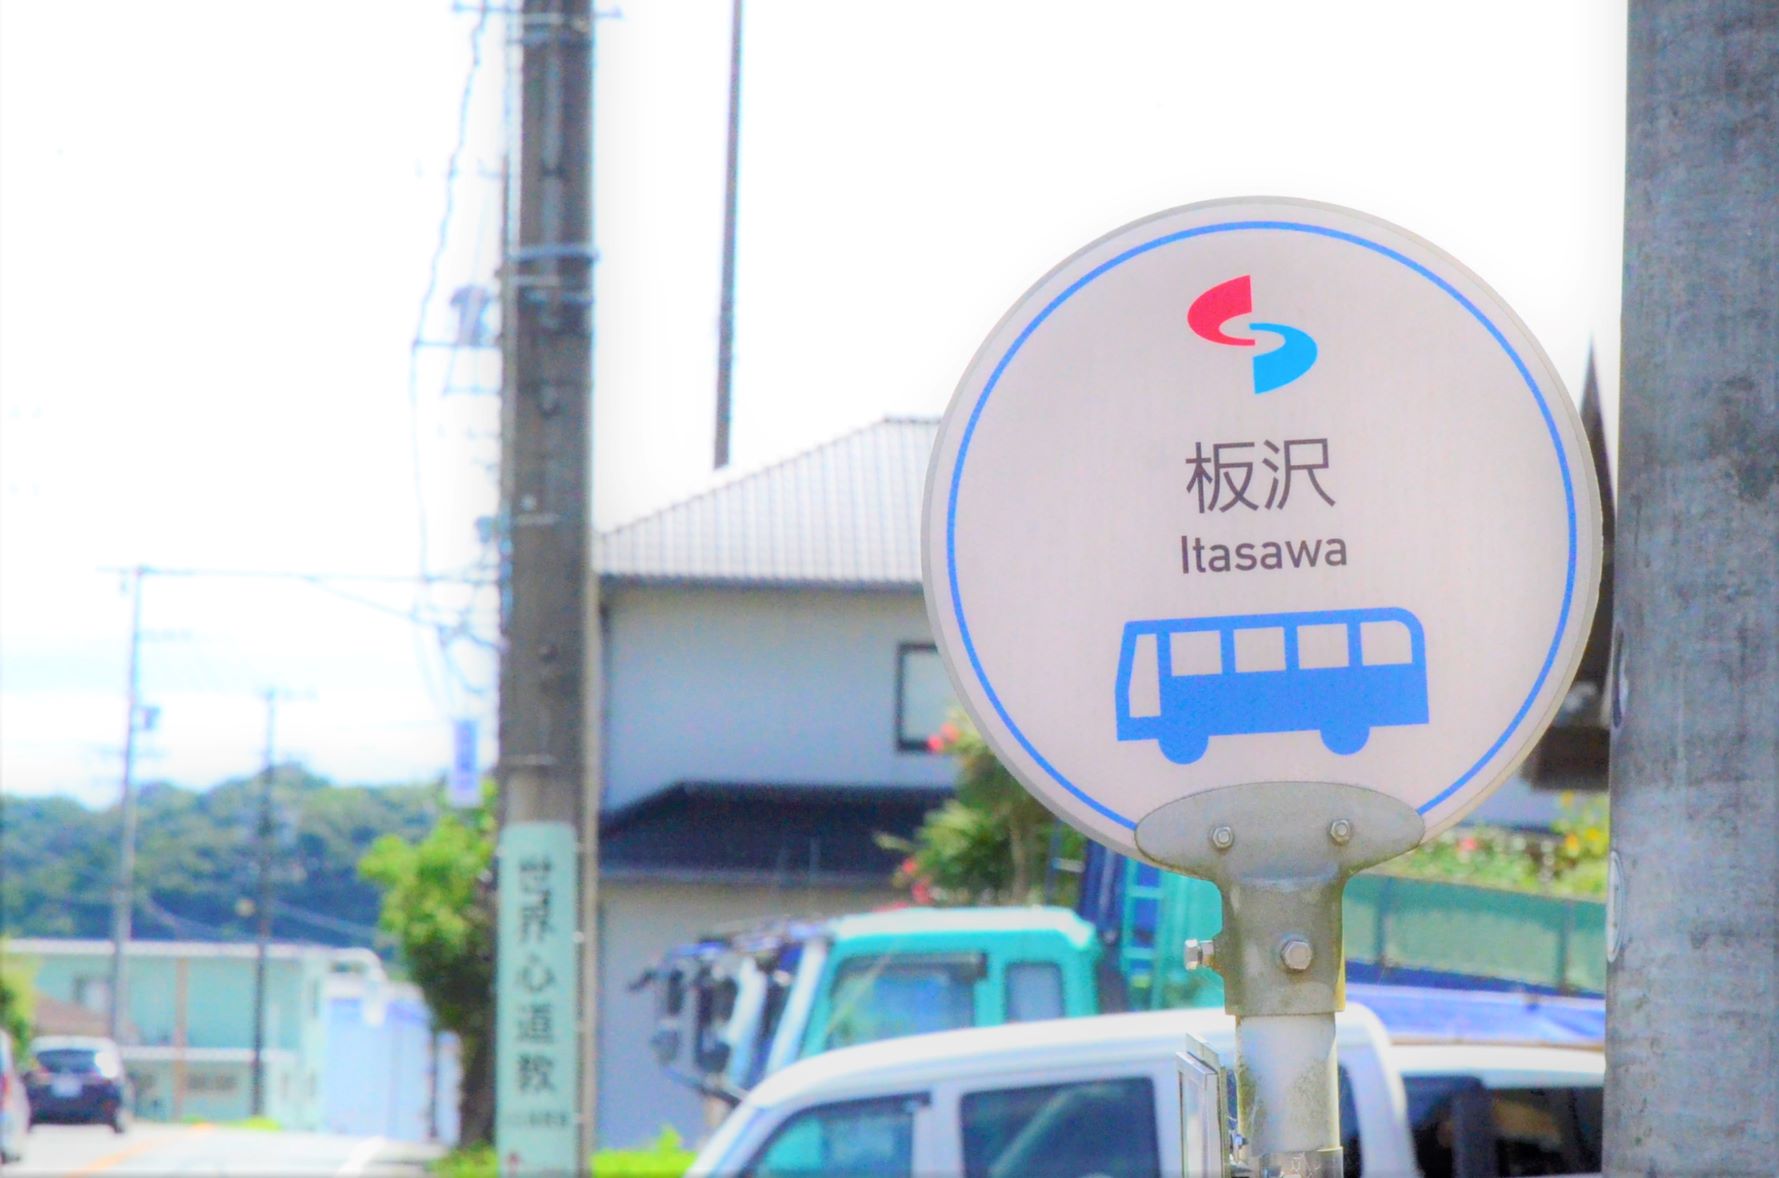 Itasawa bus stop sign